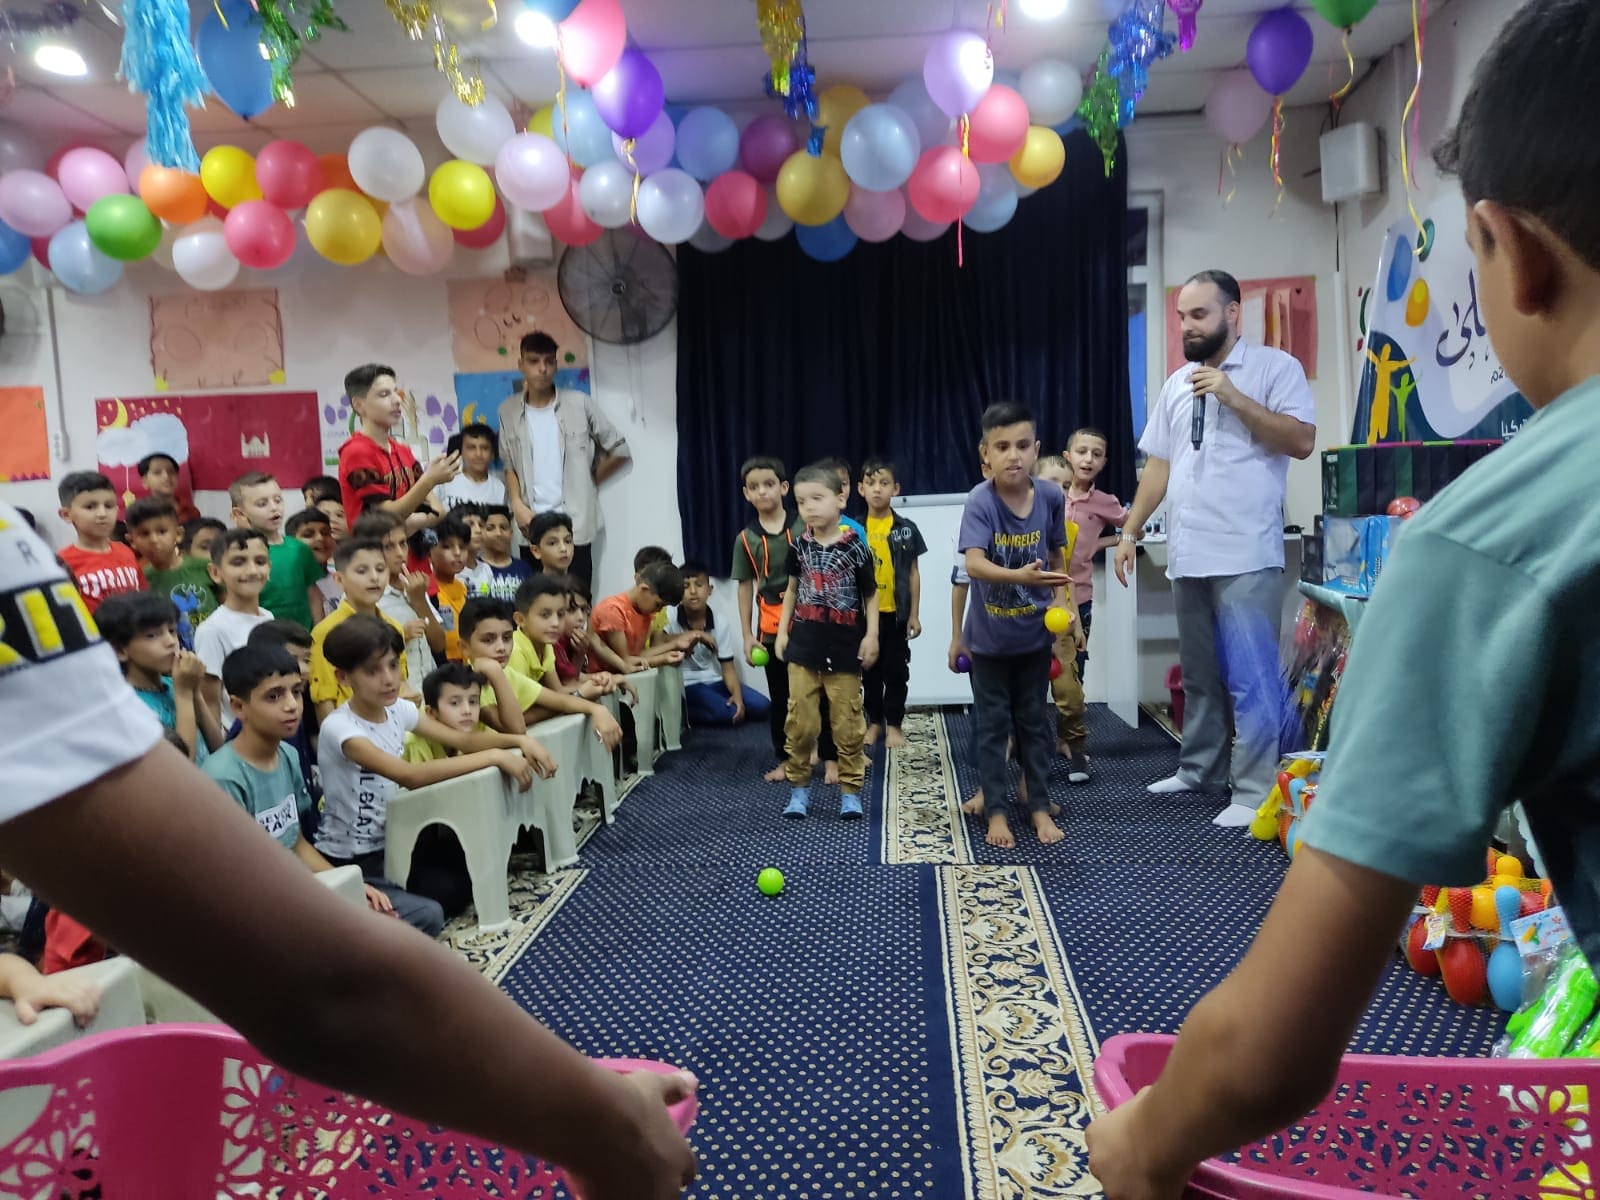 احتفالات عيد الأضحى - وقف غازي وجمعية تاج لتعليم القرآن الكريم